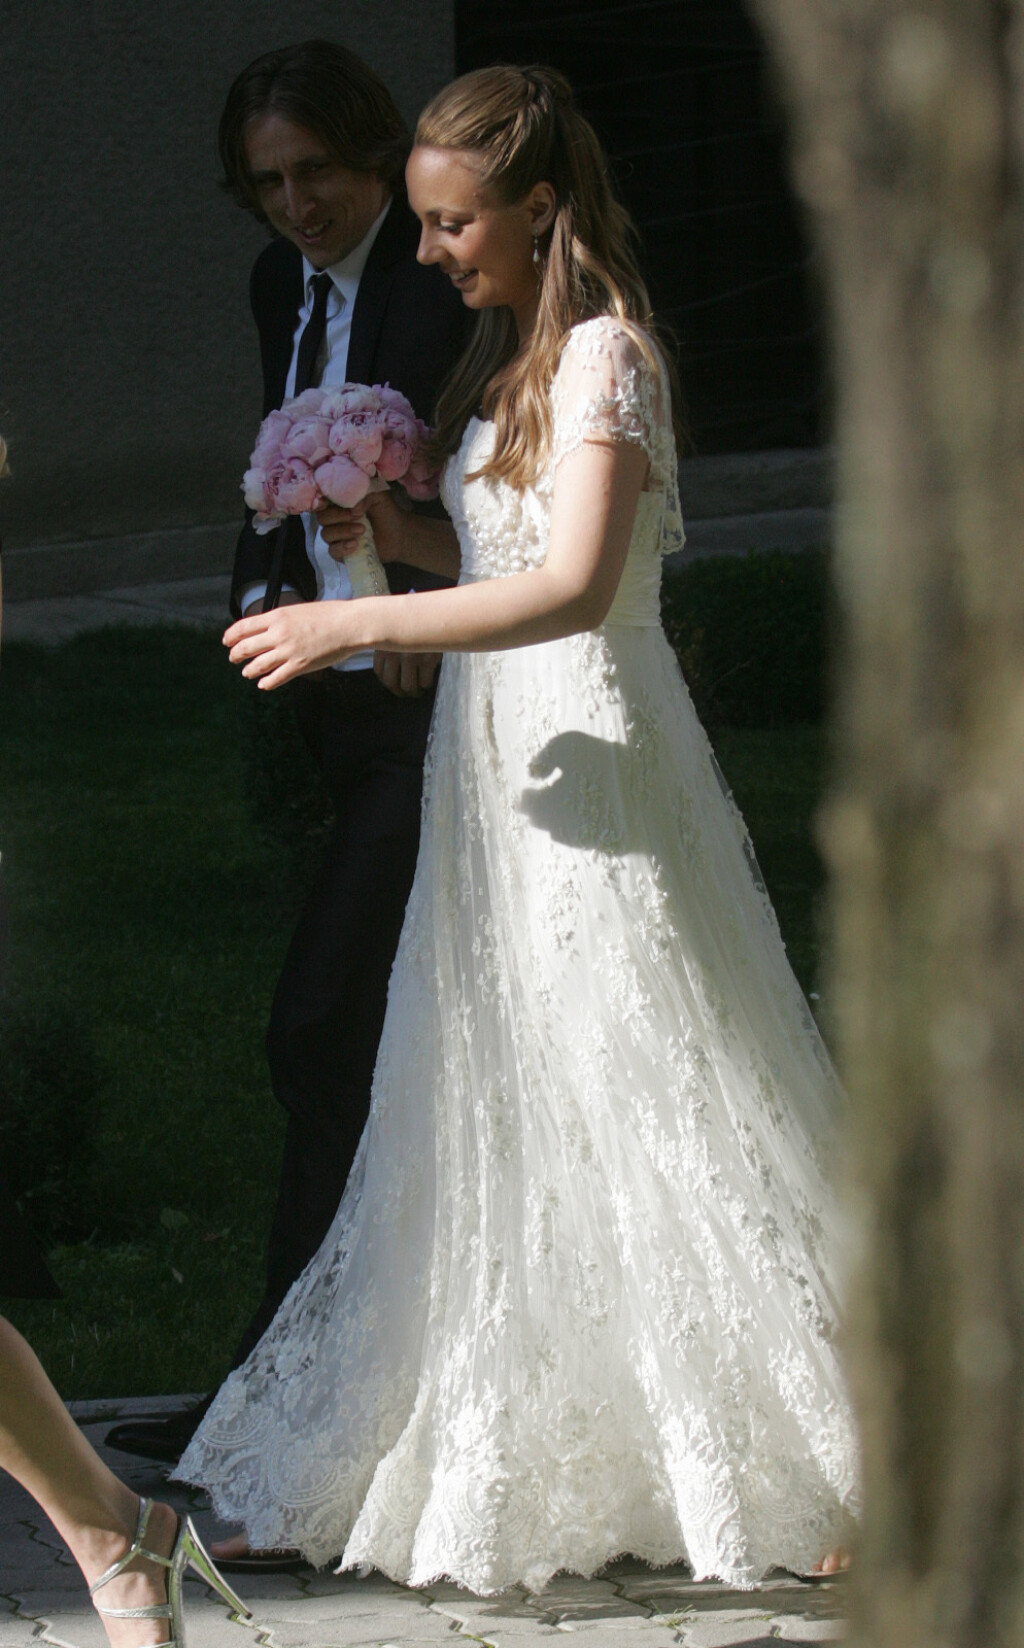 Vjenčanje Vanje i Luke Modrića u lipnju 2011. godine - 5